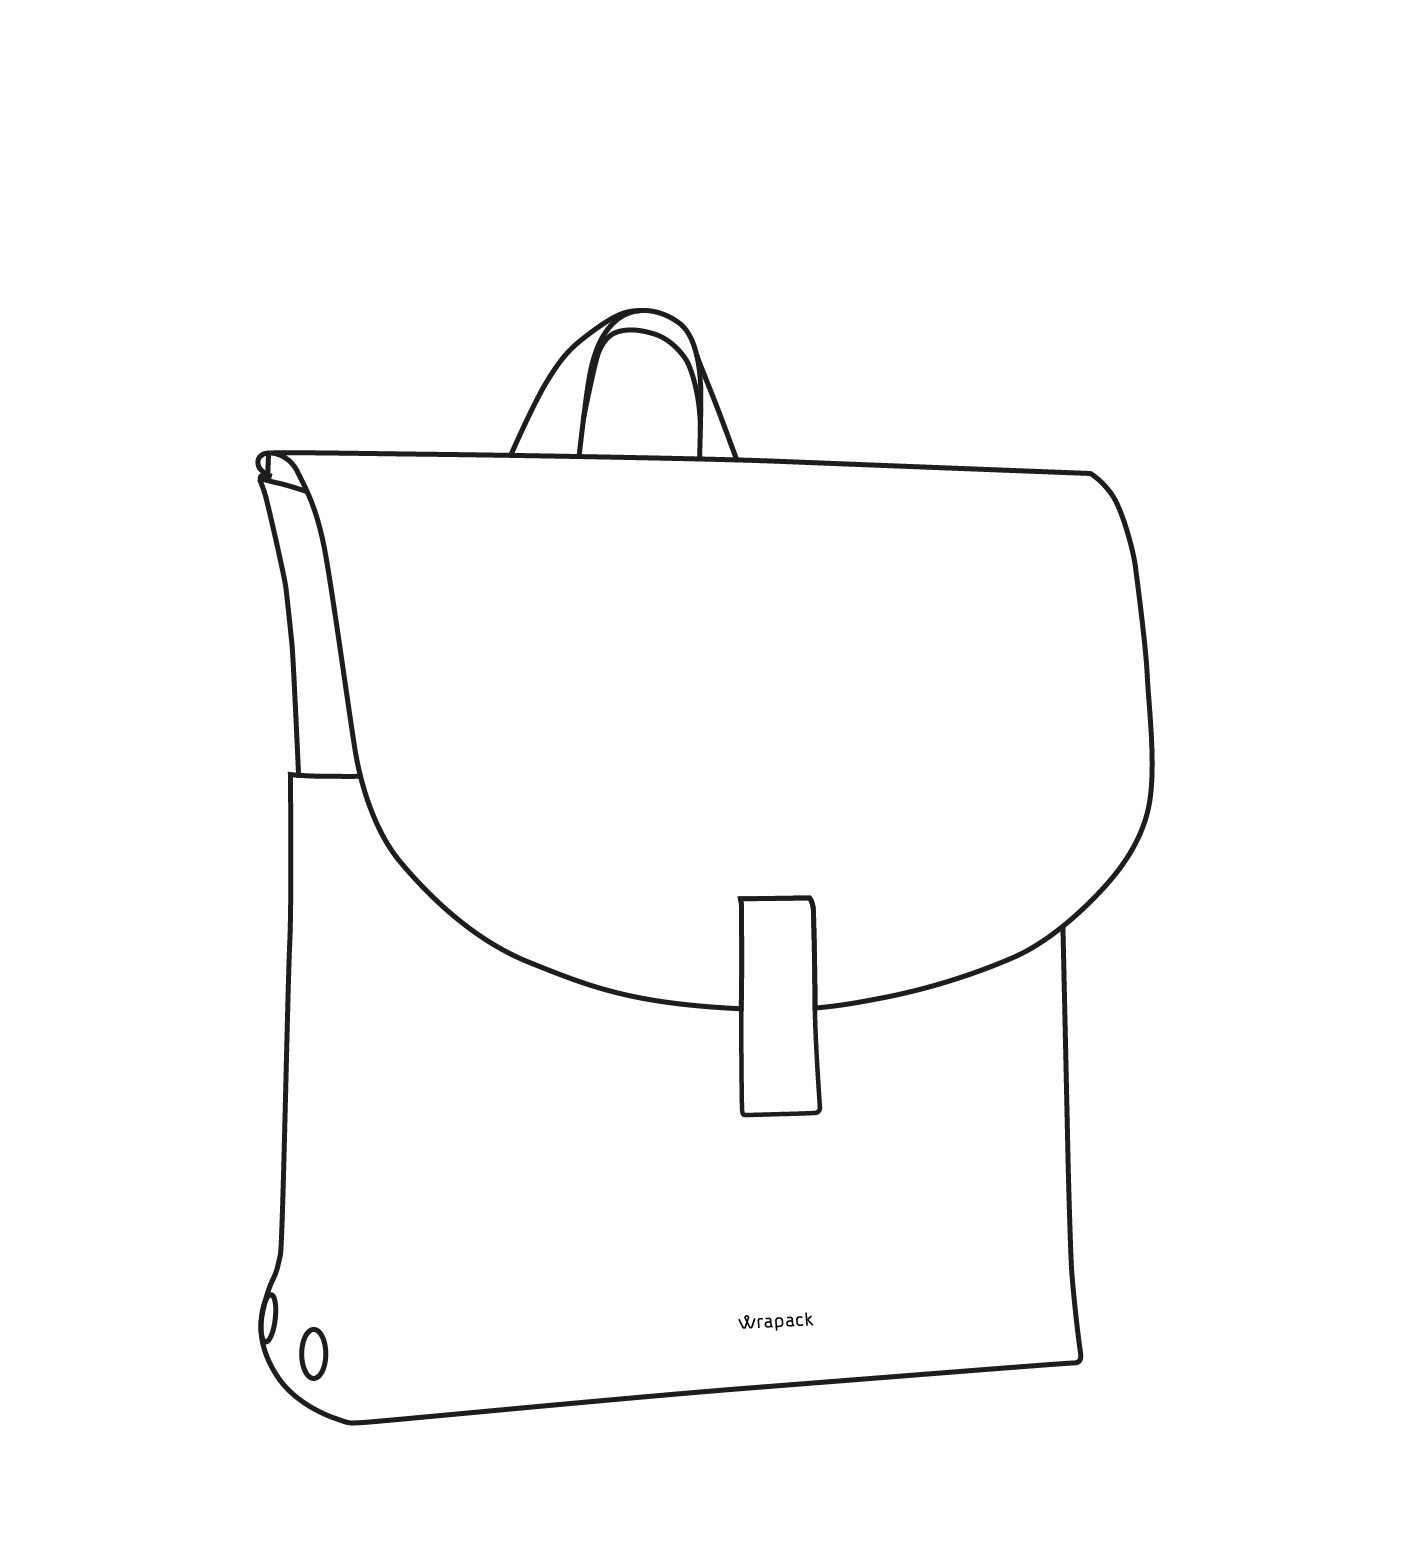 Eine Zeichnung von dem 9 Liter großen Rucksack von wrapack.